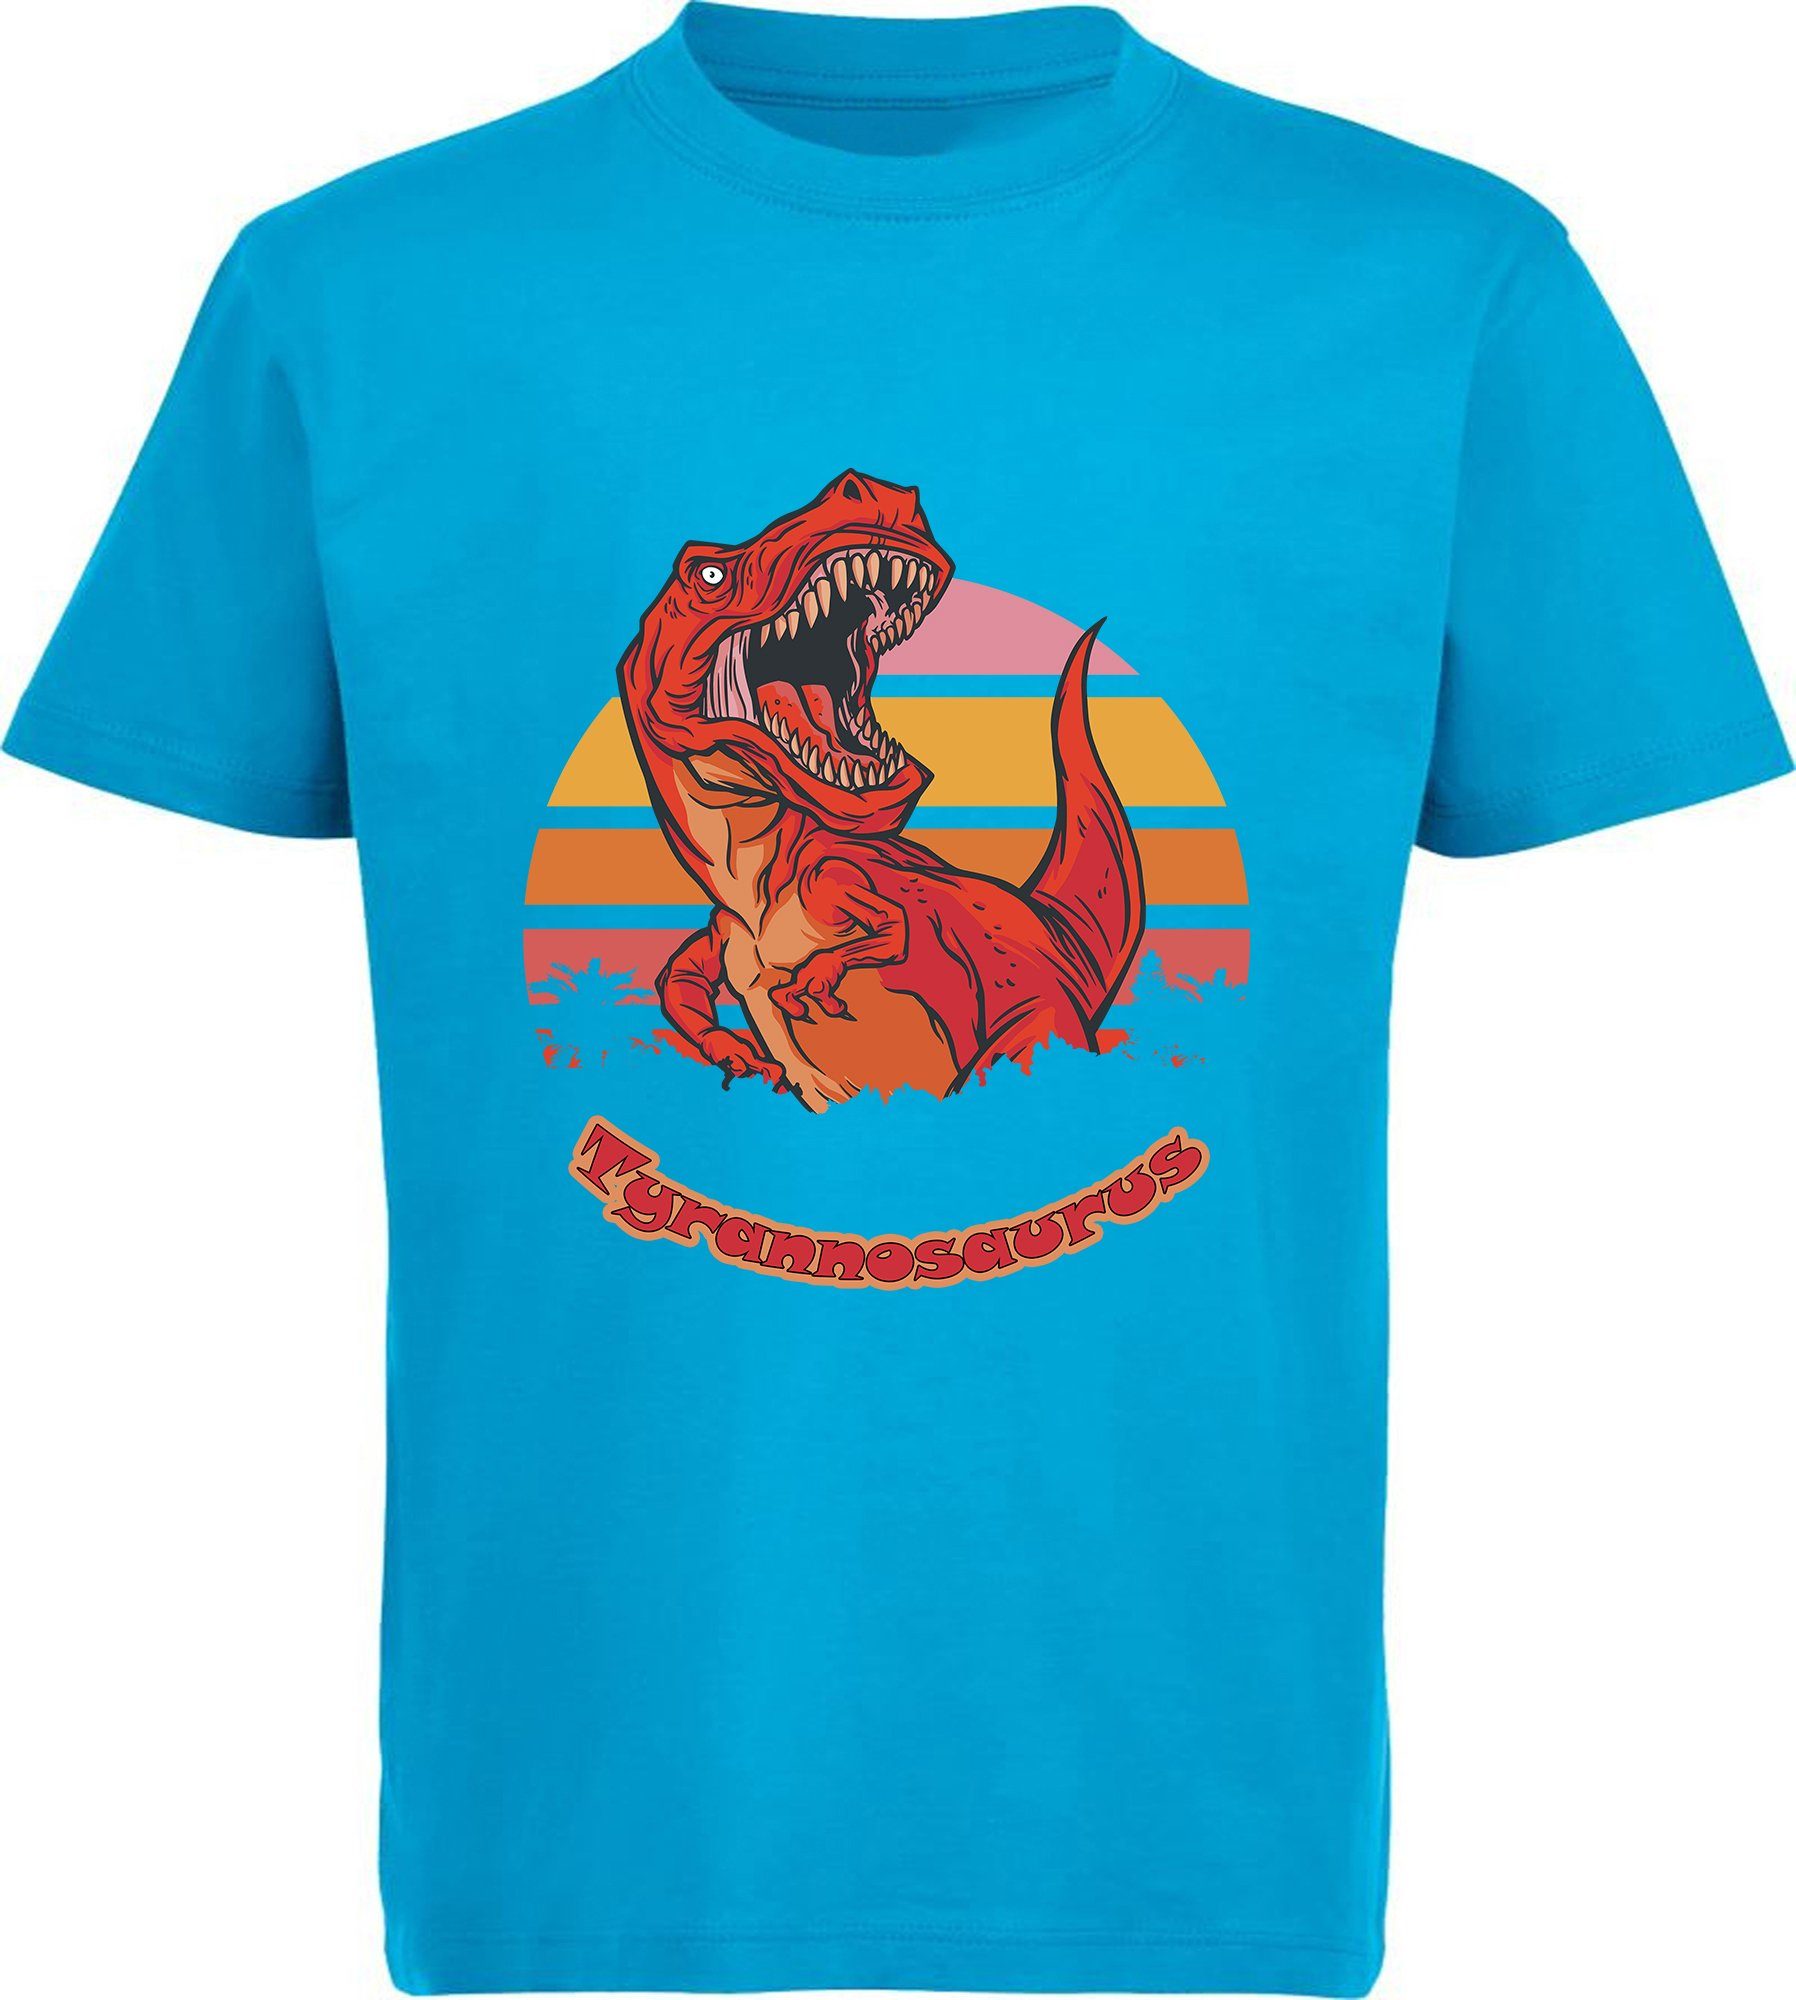 MyDesign24 Print-Shirt bedrucktes Kinder T-Shirt mit roten brüllendem T-Rex Baumwollshirt mit Dino, schwarz, weiß, rot, blau, i100 aqua blau